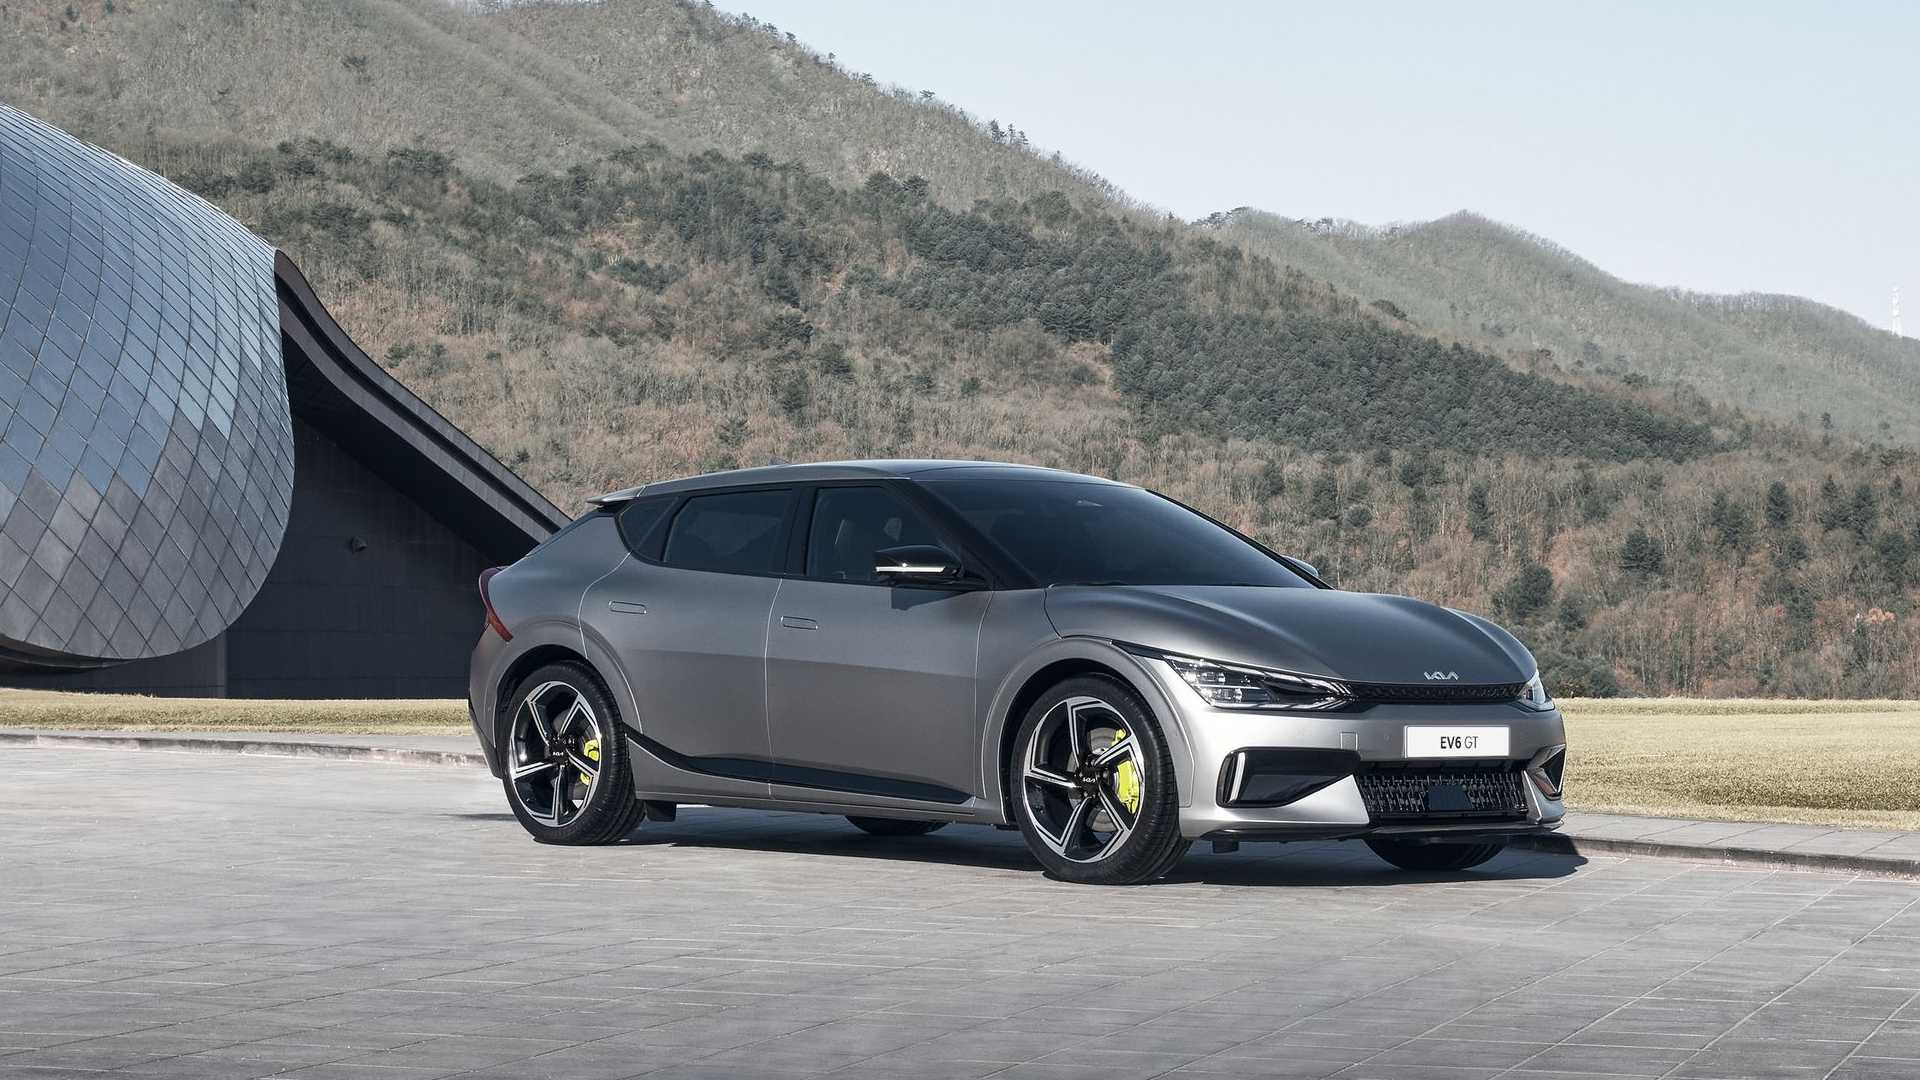 نمای کراس اور برقی کیا ای وی 6 / 2022 Kia EV6 crossover خاکستری رنگ با منظره کوهستان